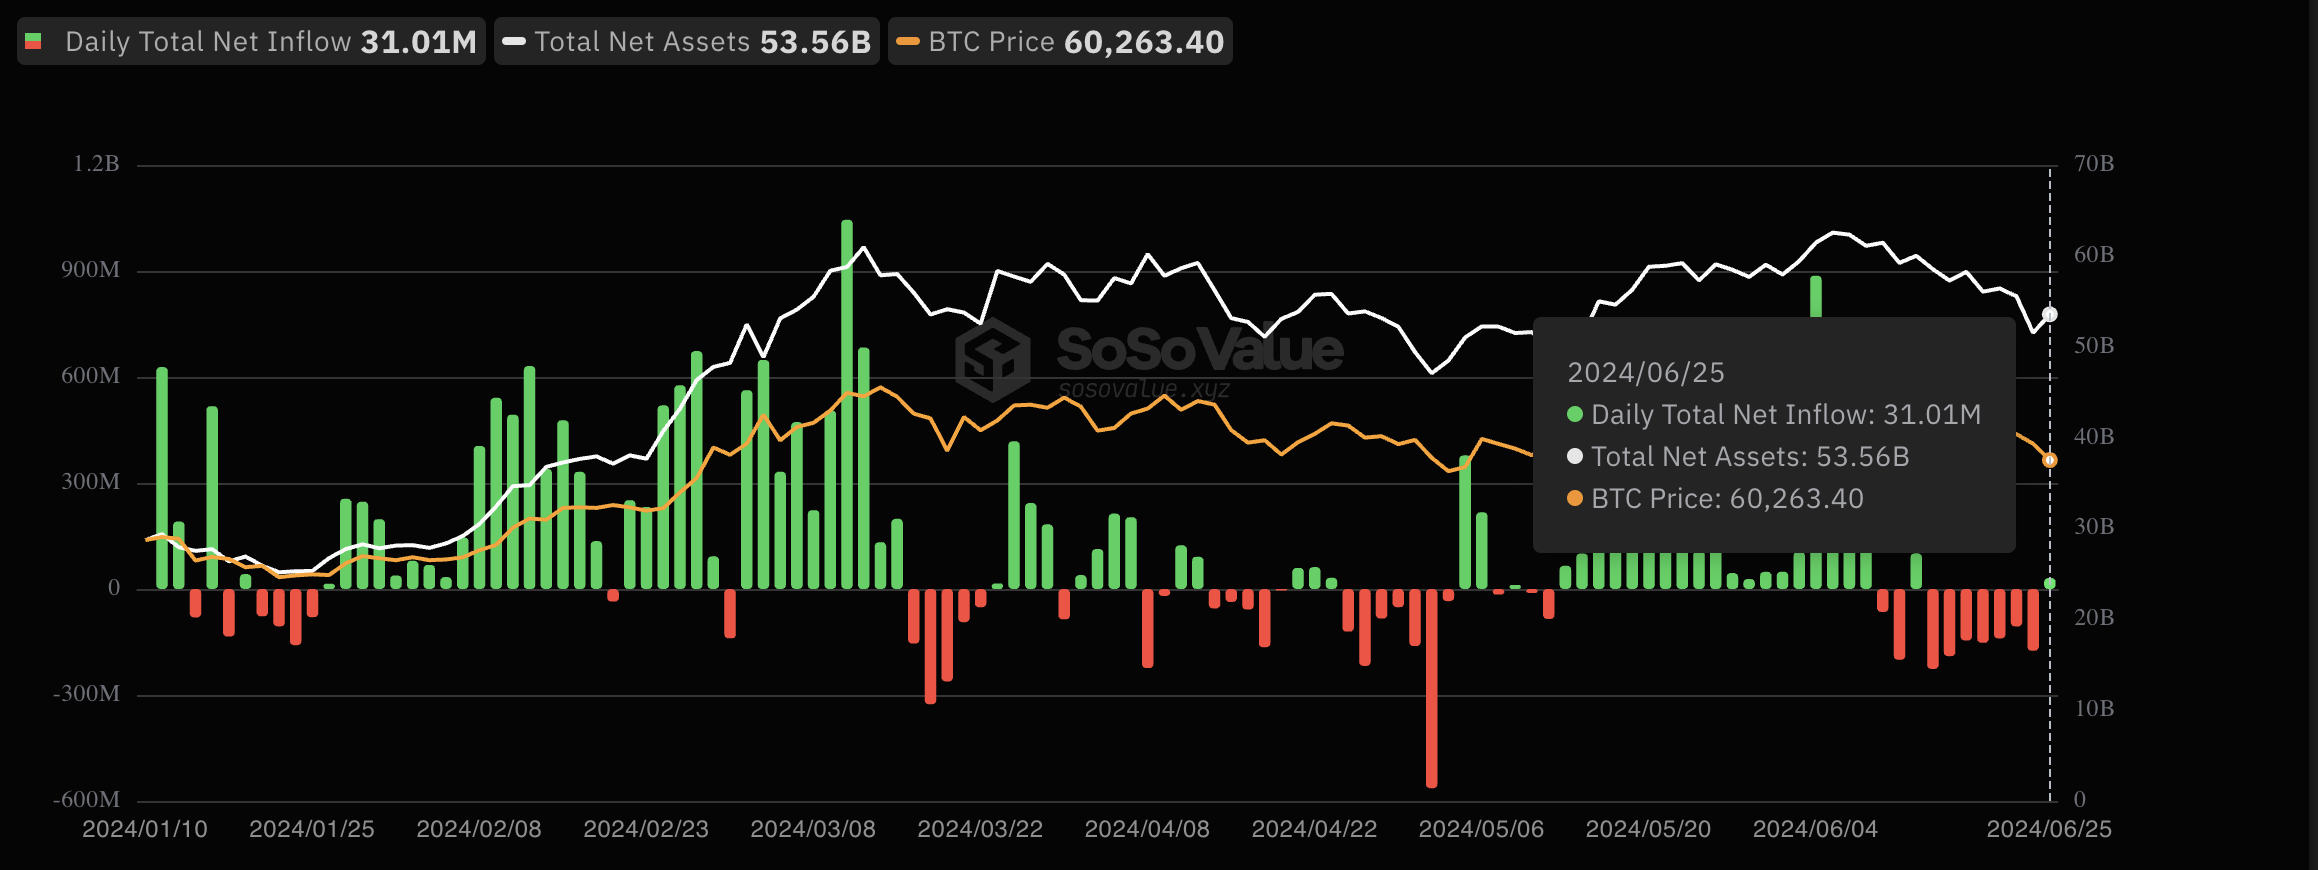 Giá Bitcoin giảm dưới mức giá mua của nhà đầu tư, cảnh báo về sự sụt giảm sâu hơn